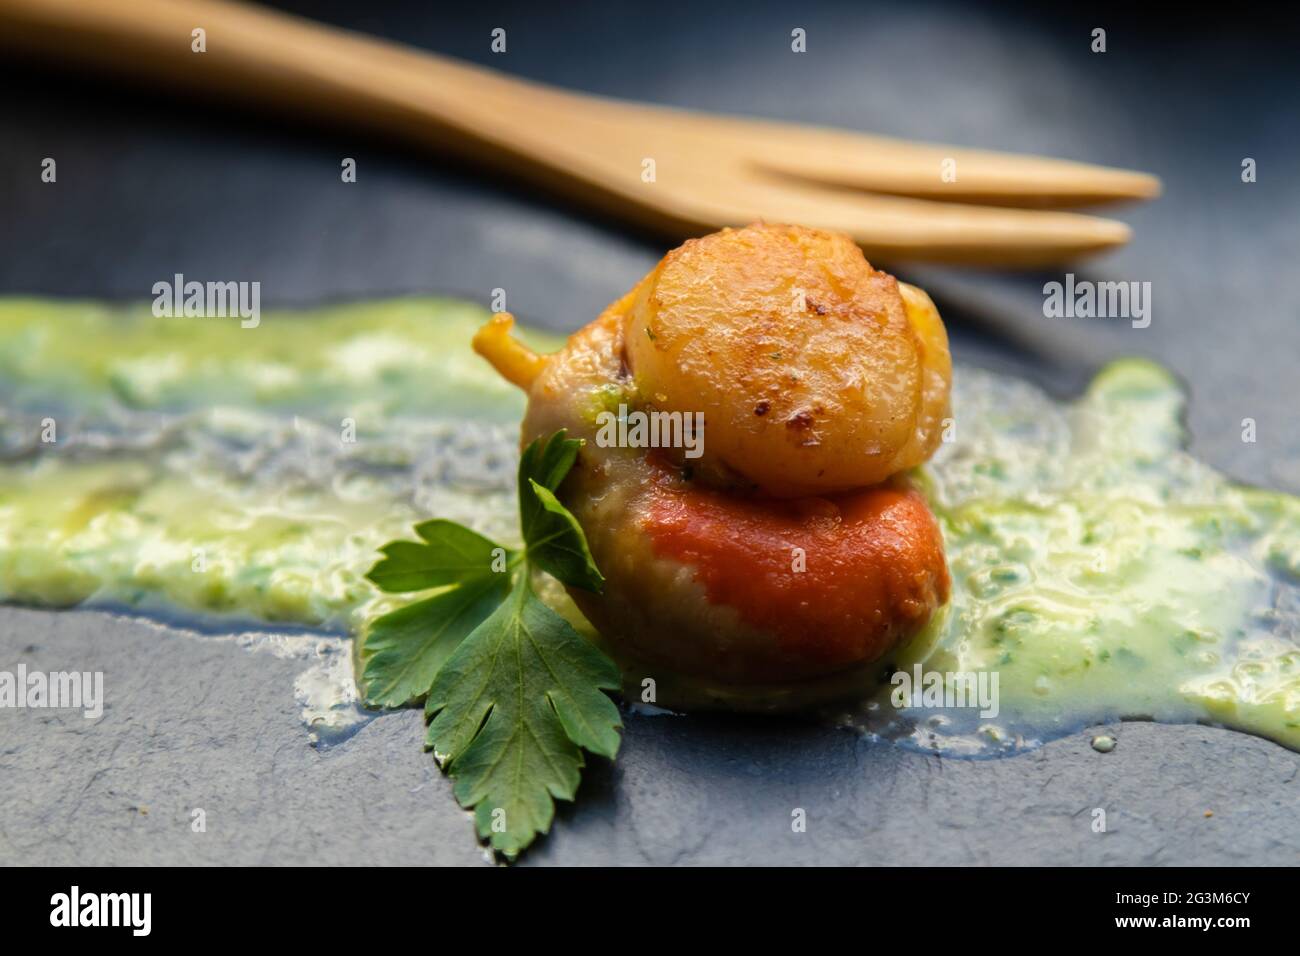 présentation gastronomique de pétoncles dans une sauce verte sur une assiette de pierre Banque D'Images